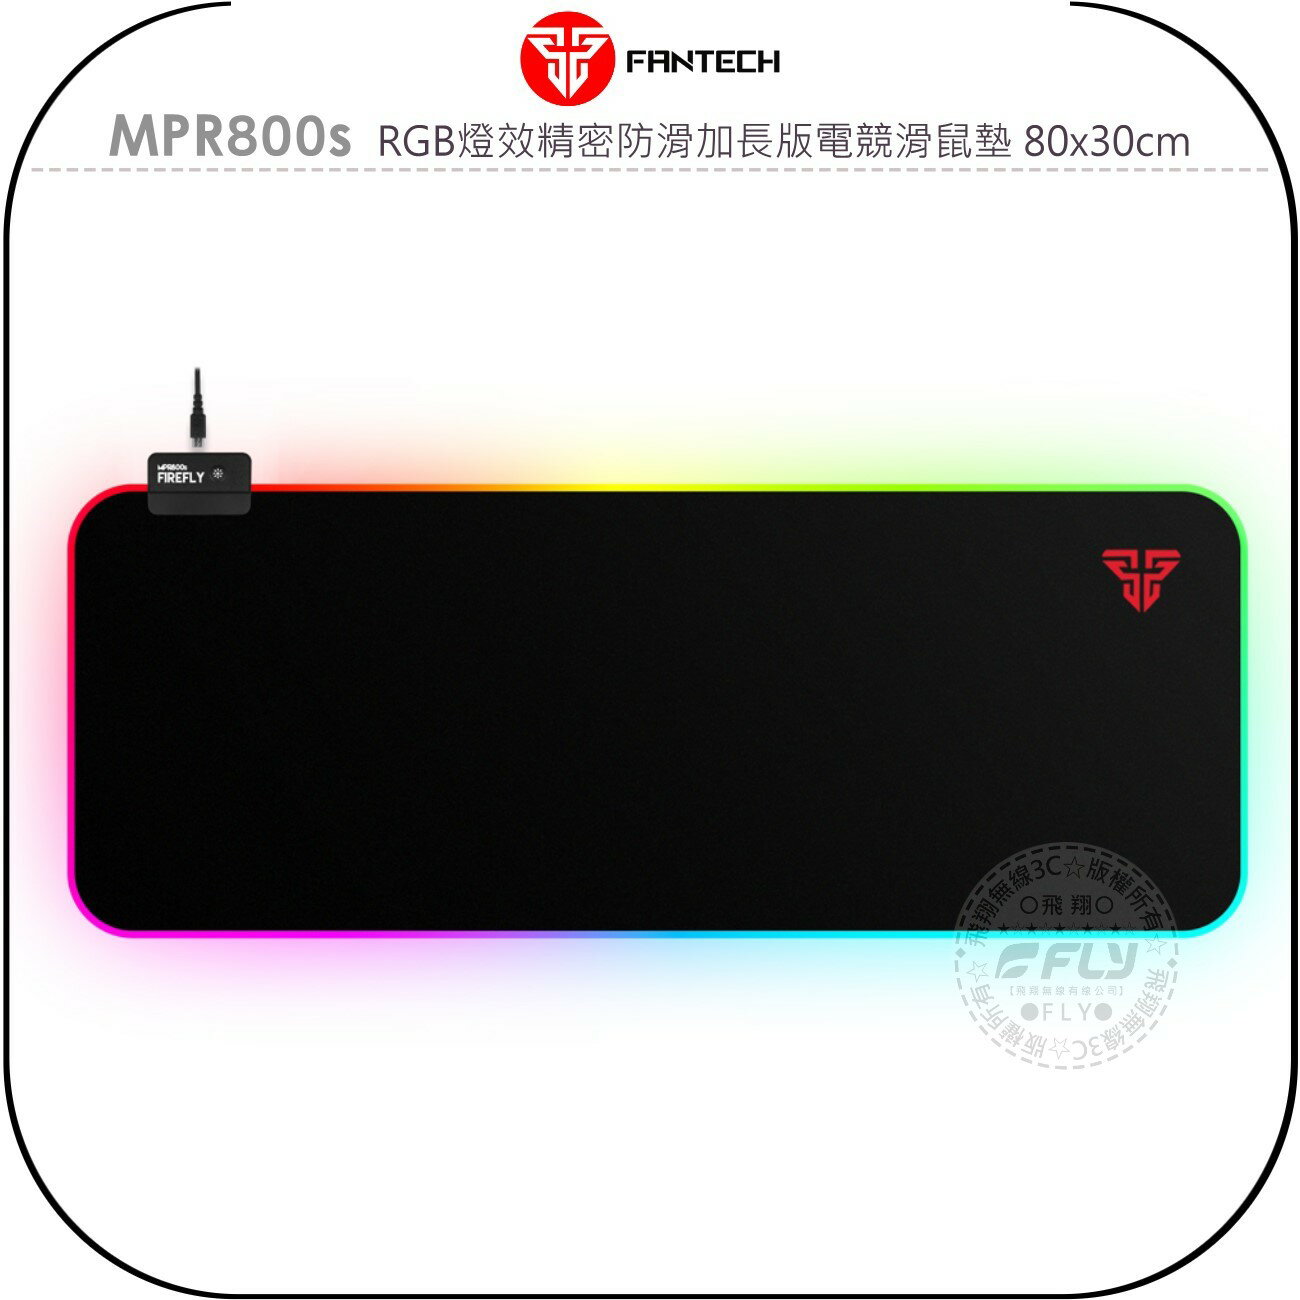 《飛翔無線3C》FANTECH MPR800s RGB燈效精密防滑加長版電競滑鼠墊 80x30cm￨公司貨￨可調燈光